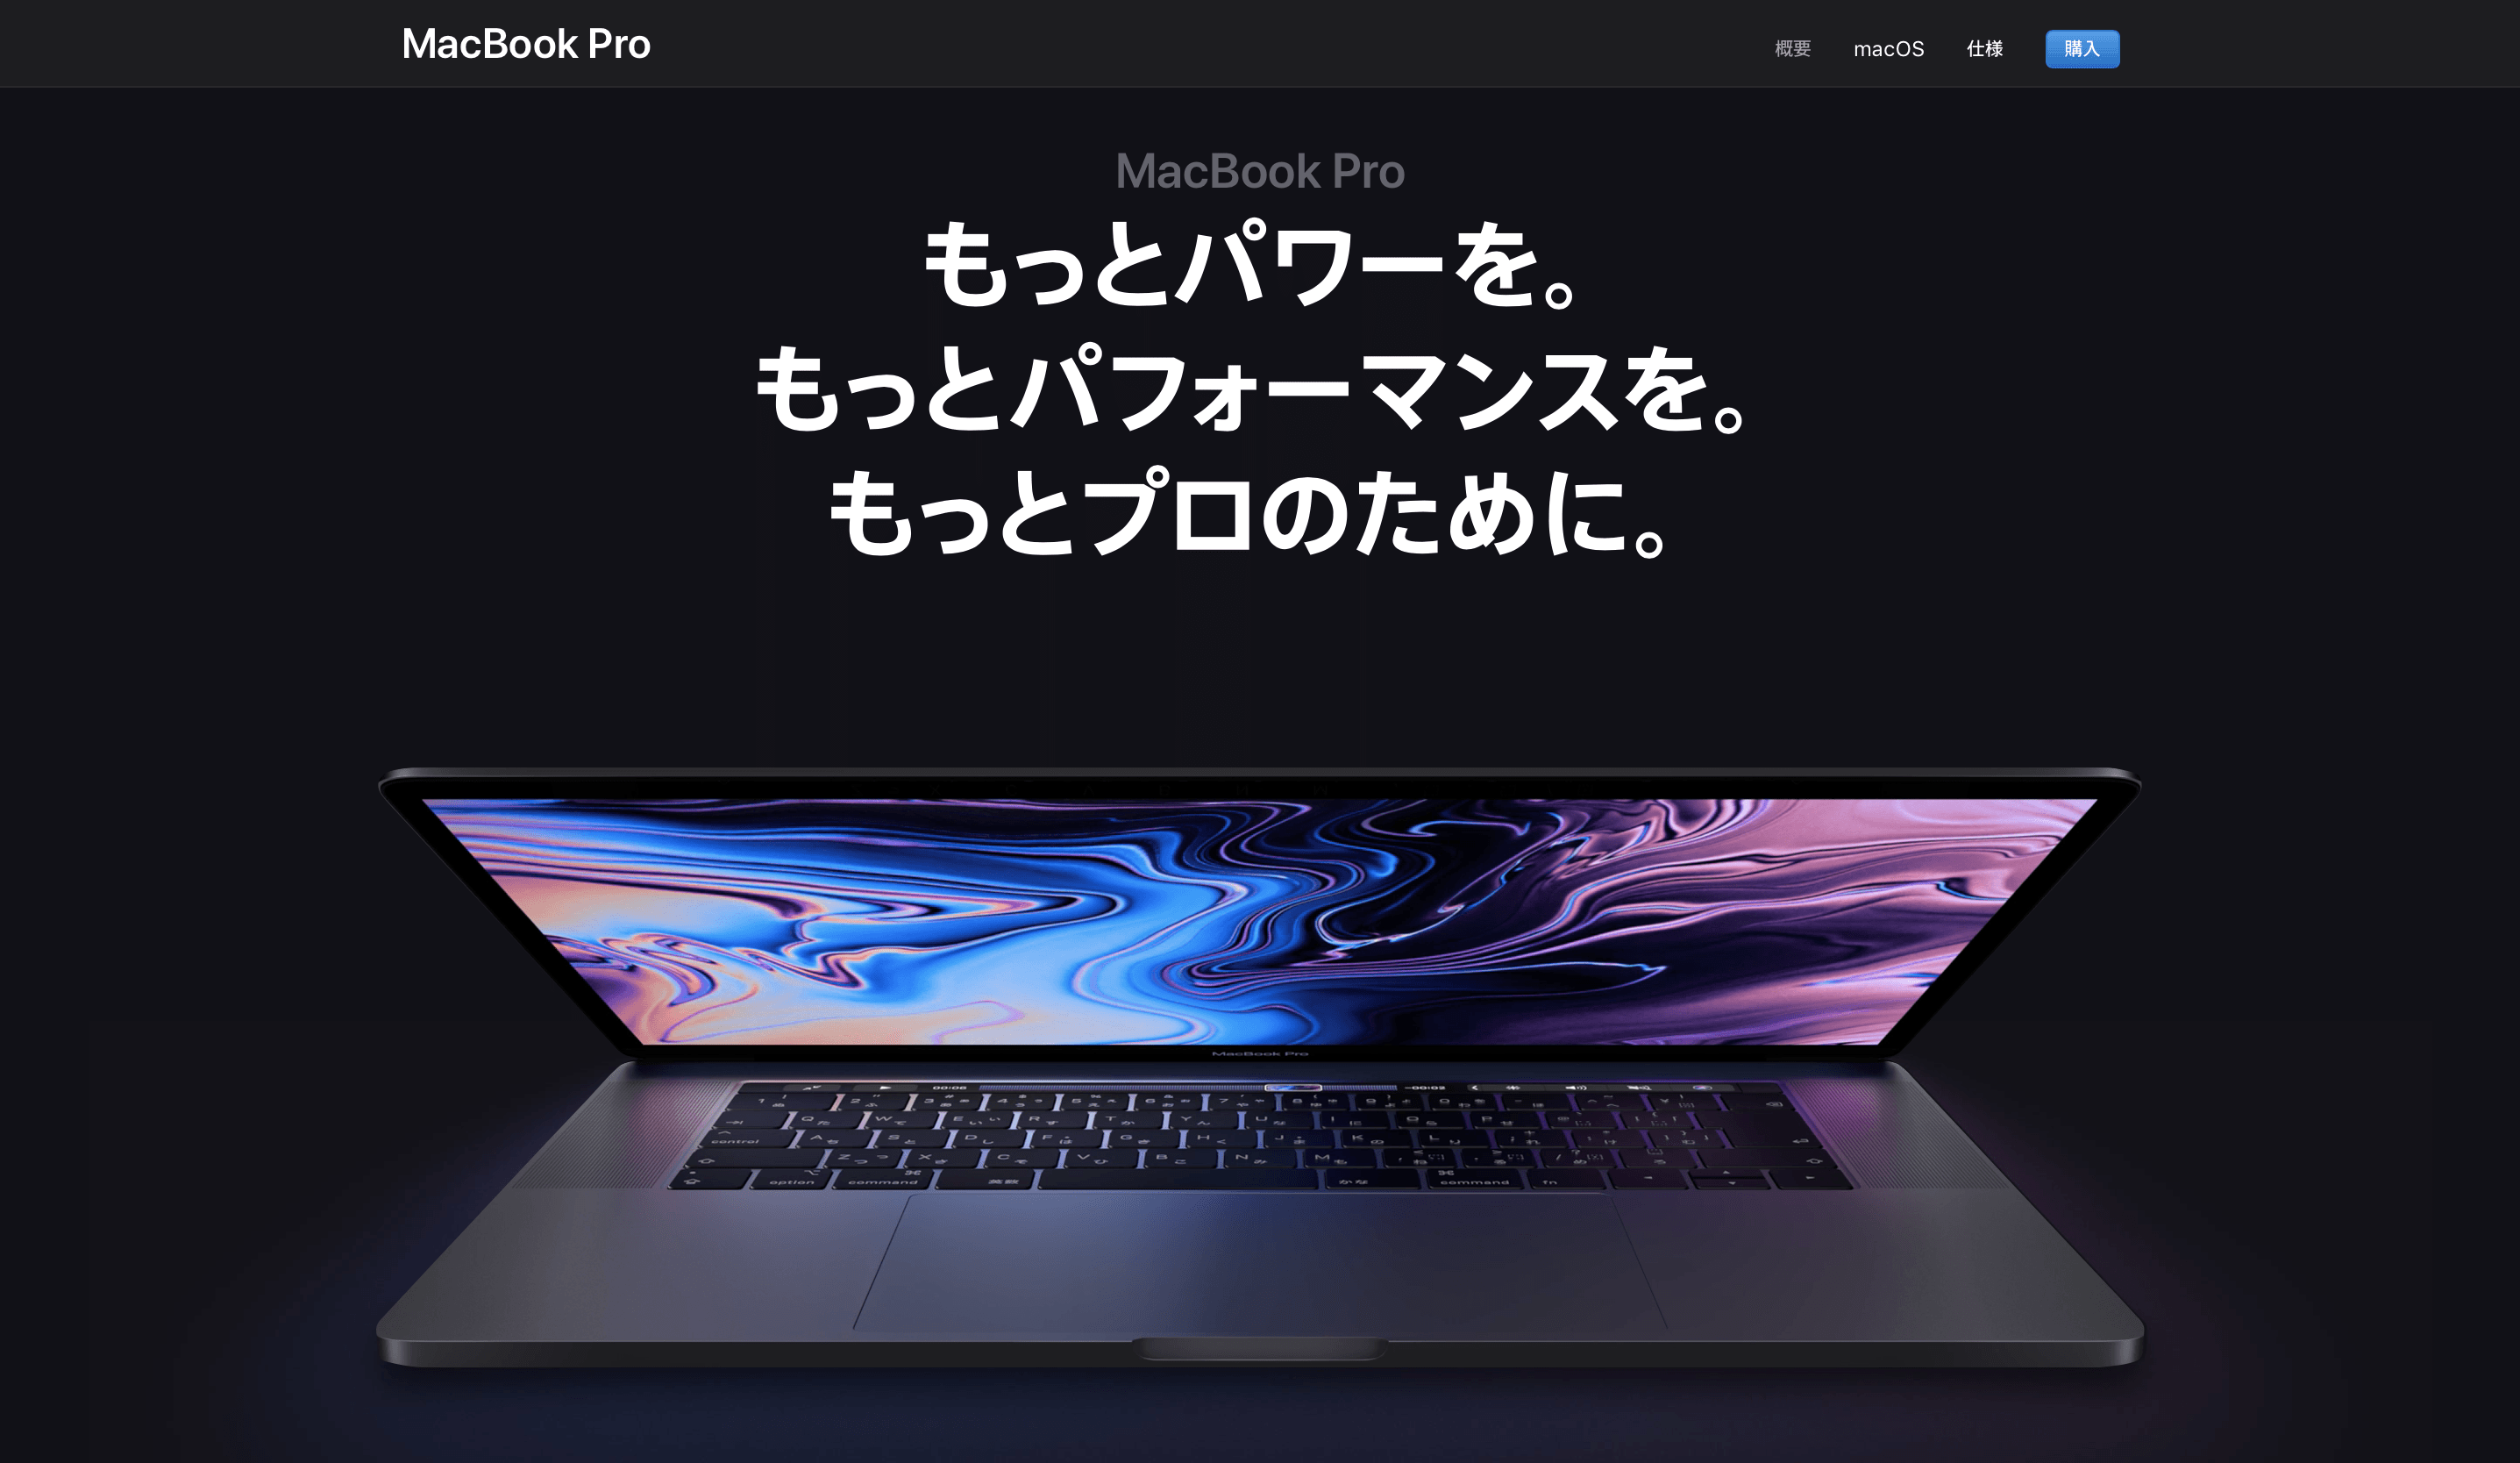 【2018年7月】新型MacBook Pro 13インチモデルなら最安モデルがおすすめ！フルスペックの価格一覧 | エンジニアライブログ